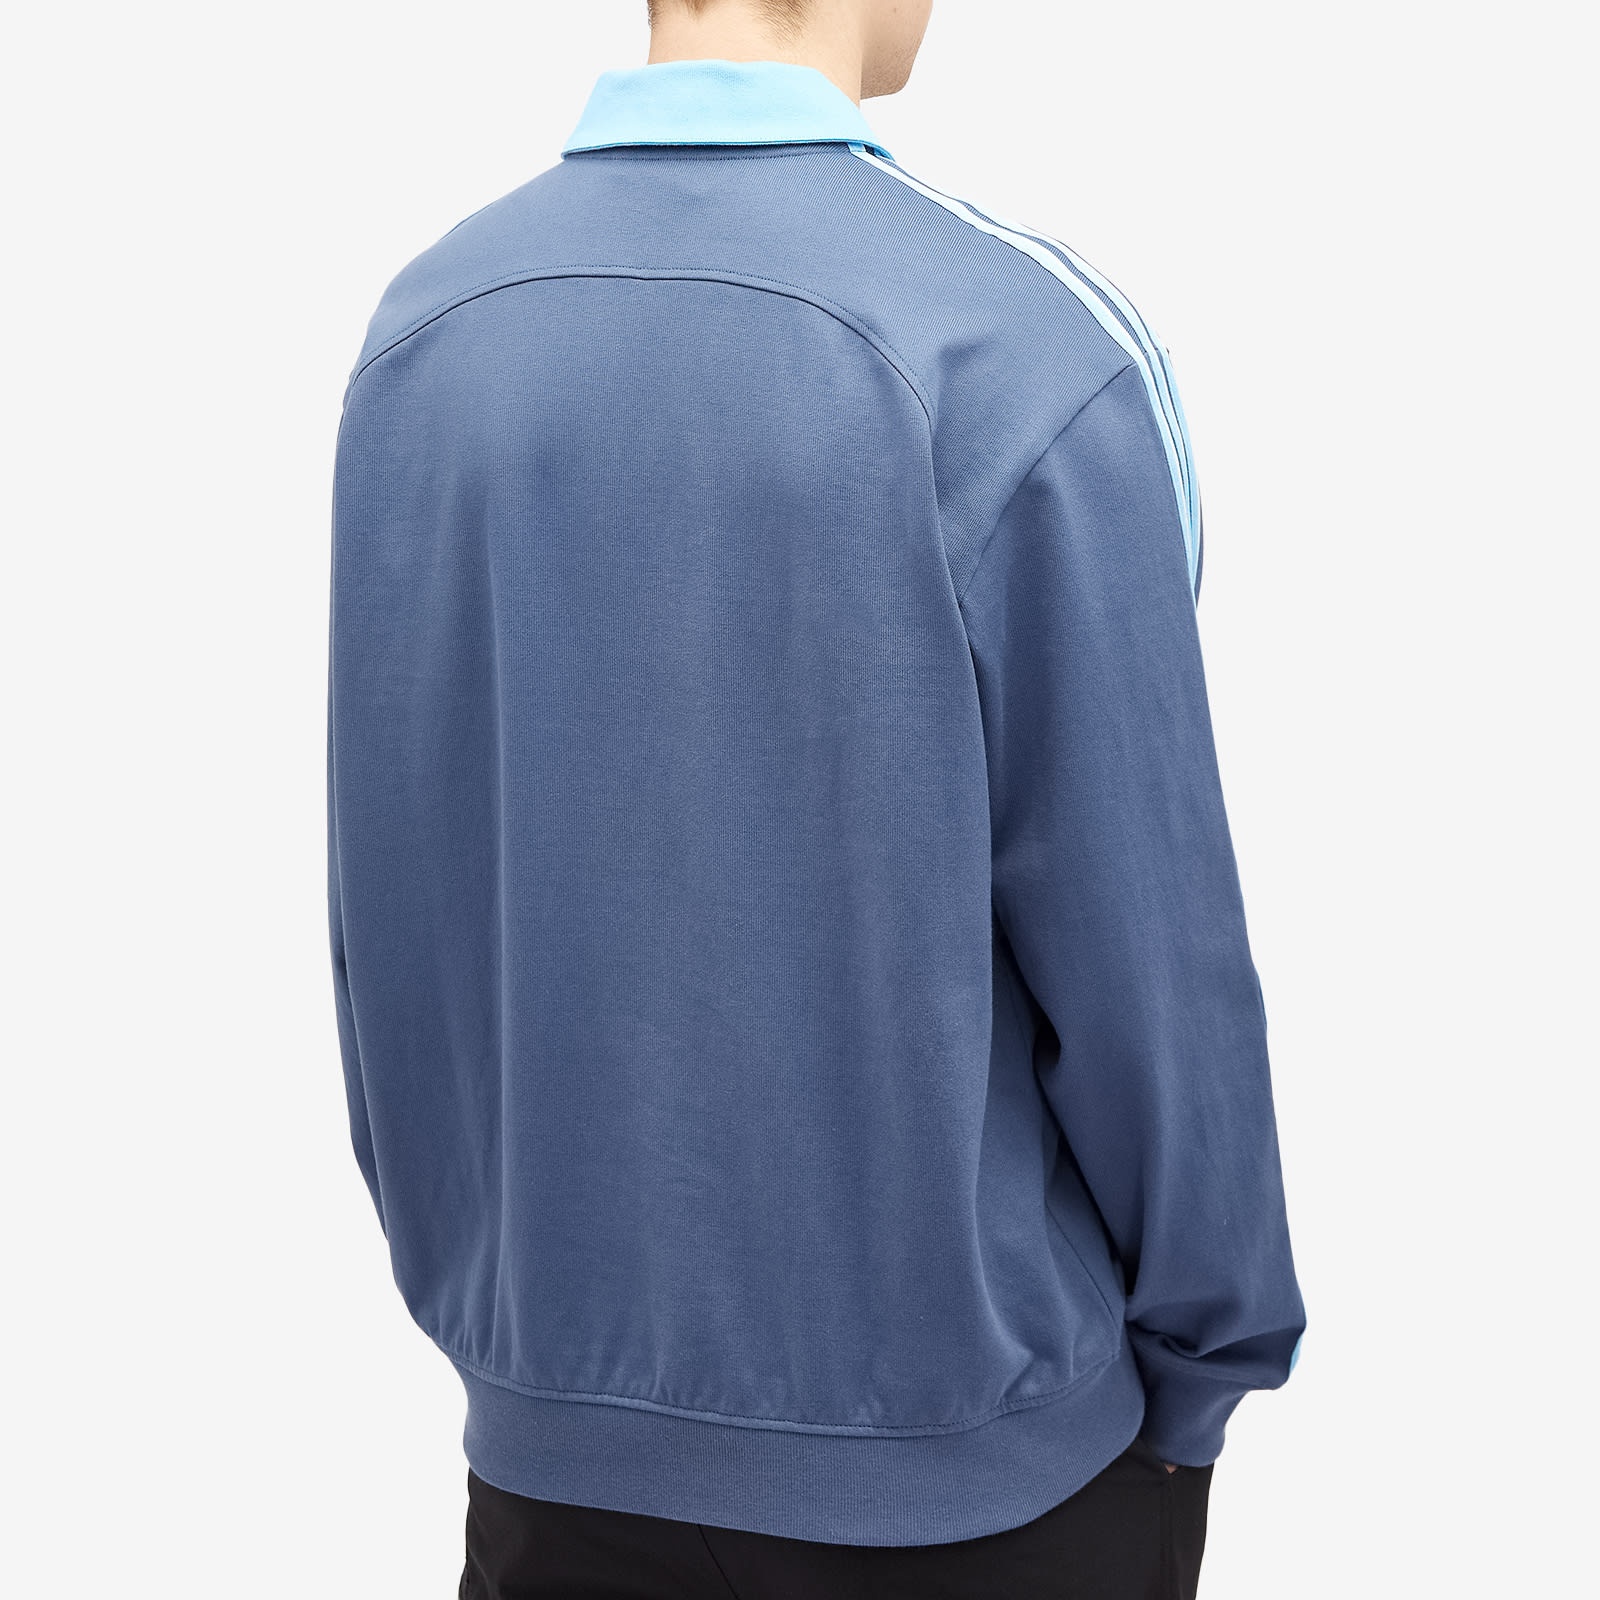 Adidas Collar Sweatshirt - 3